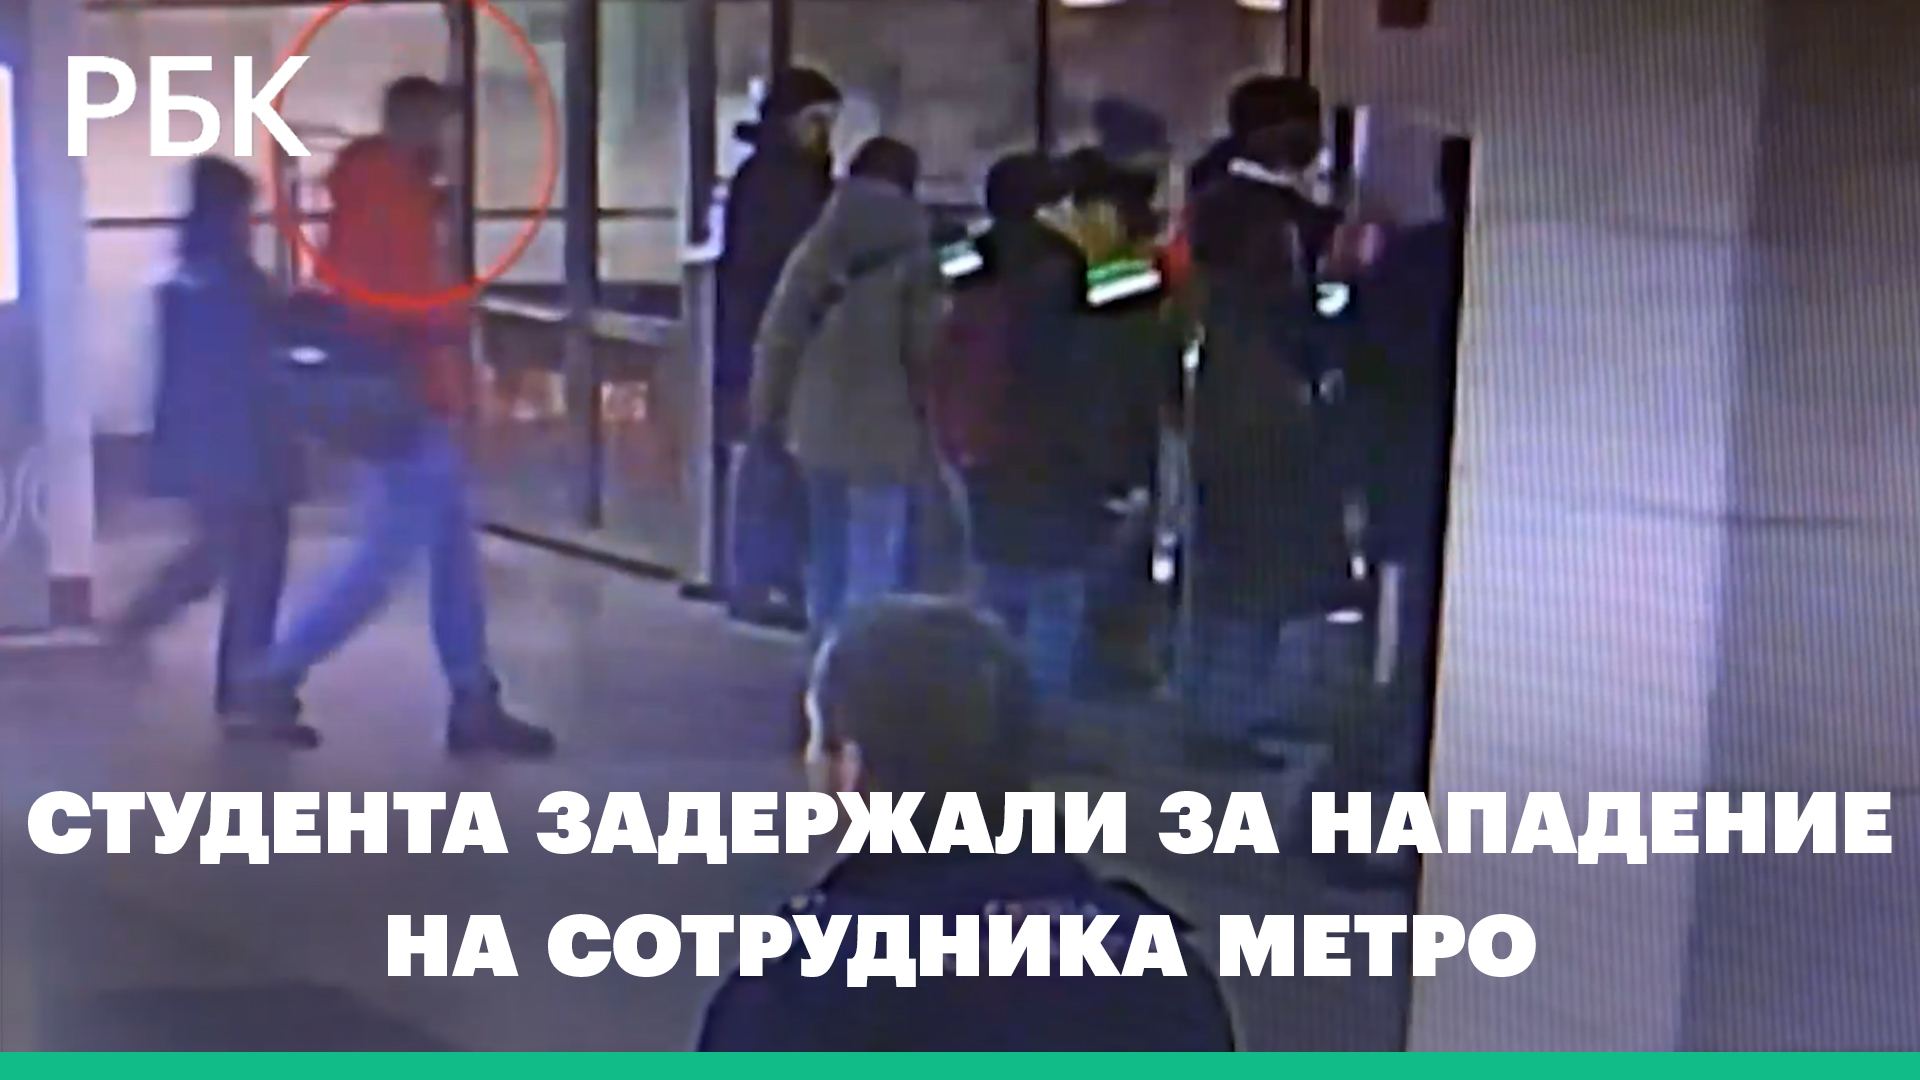 В Москве студента задержали за нападение на сотрудника метро